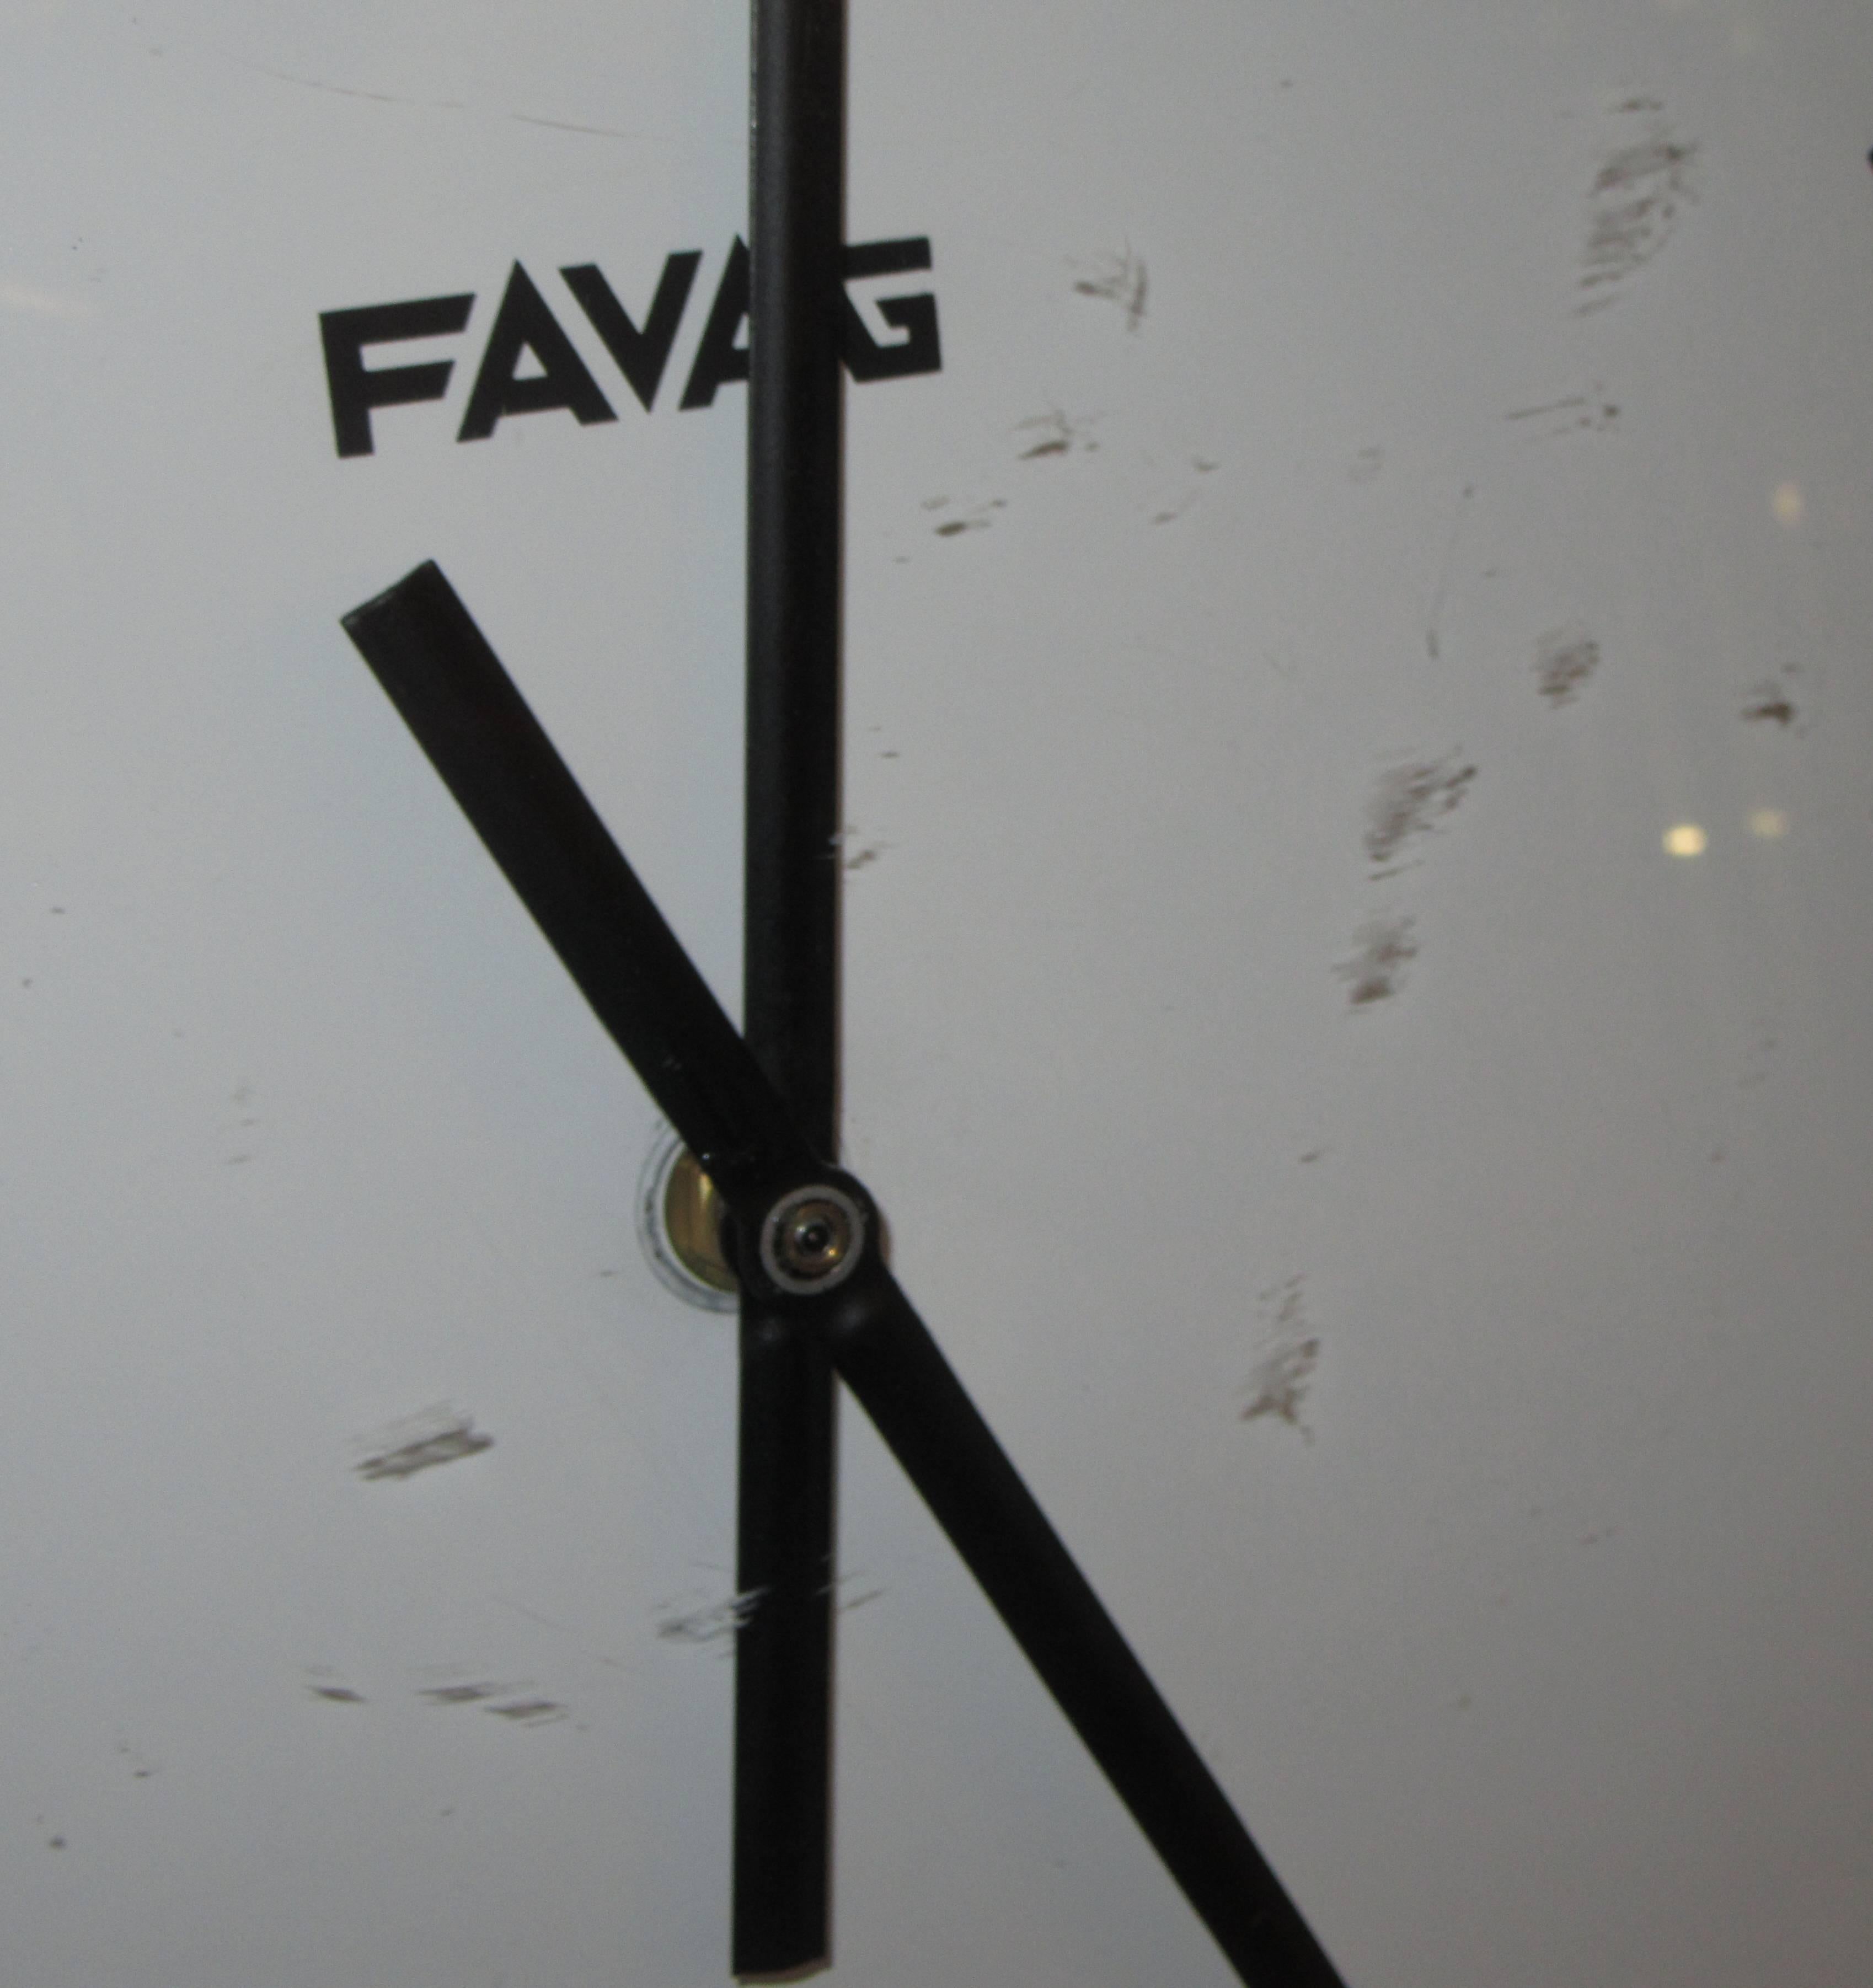 favag clock